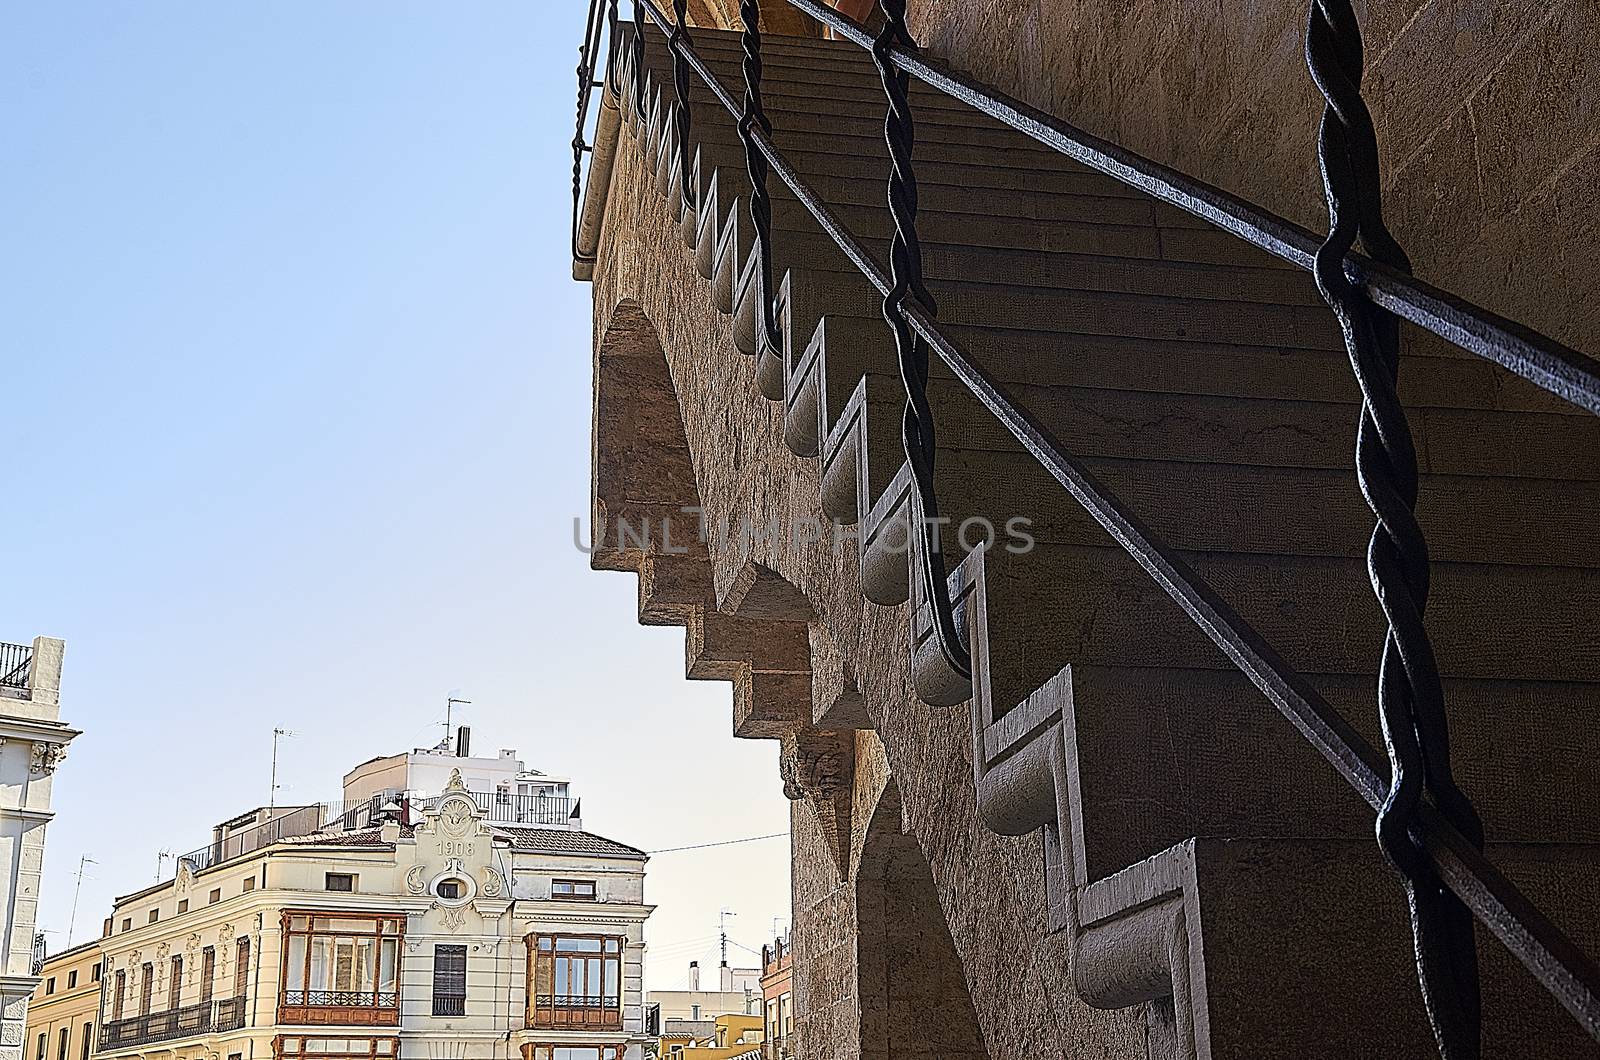 Staircase to the keep by bpardofotografia